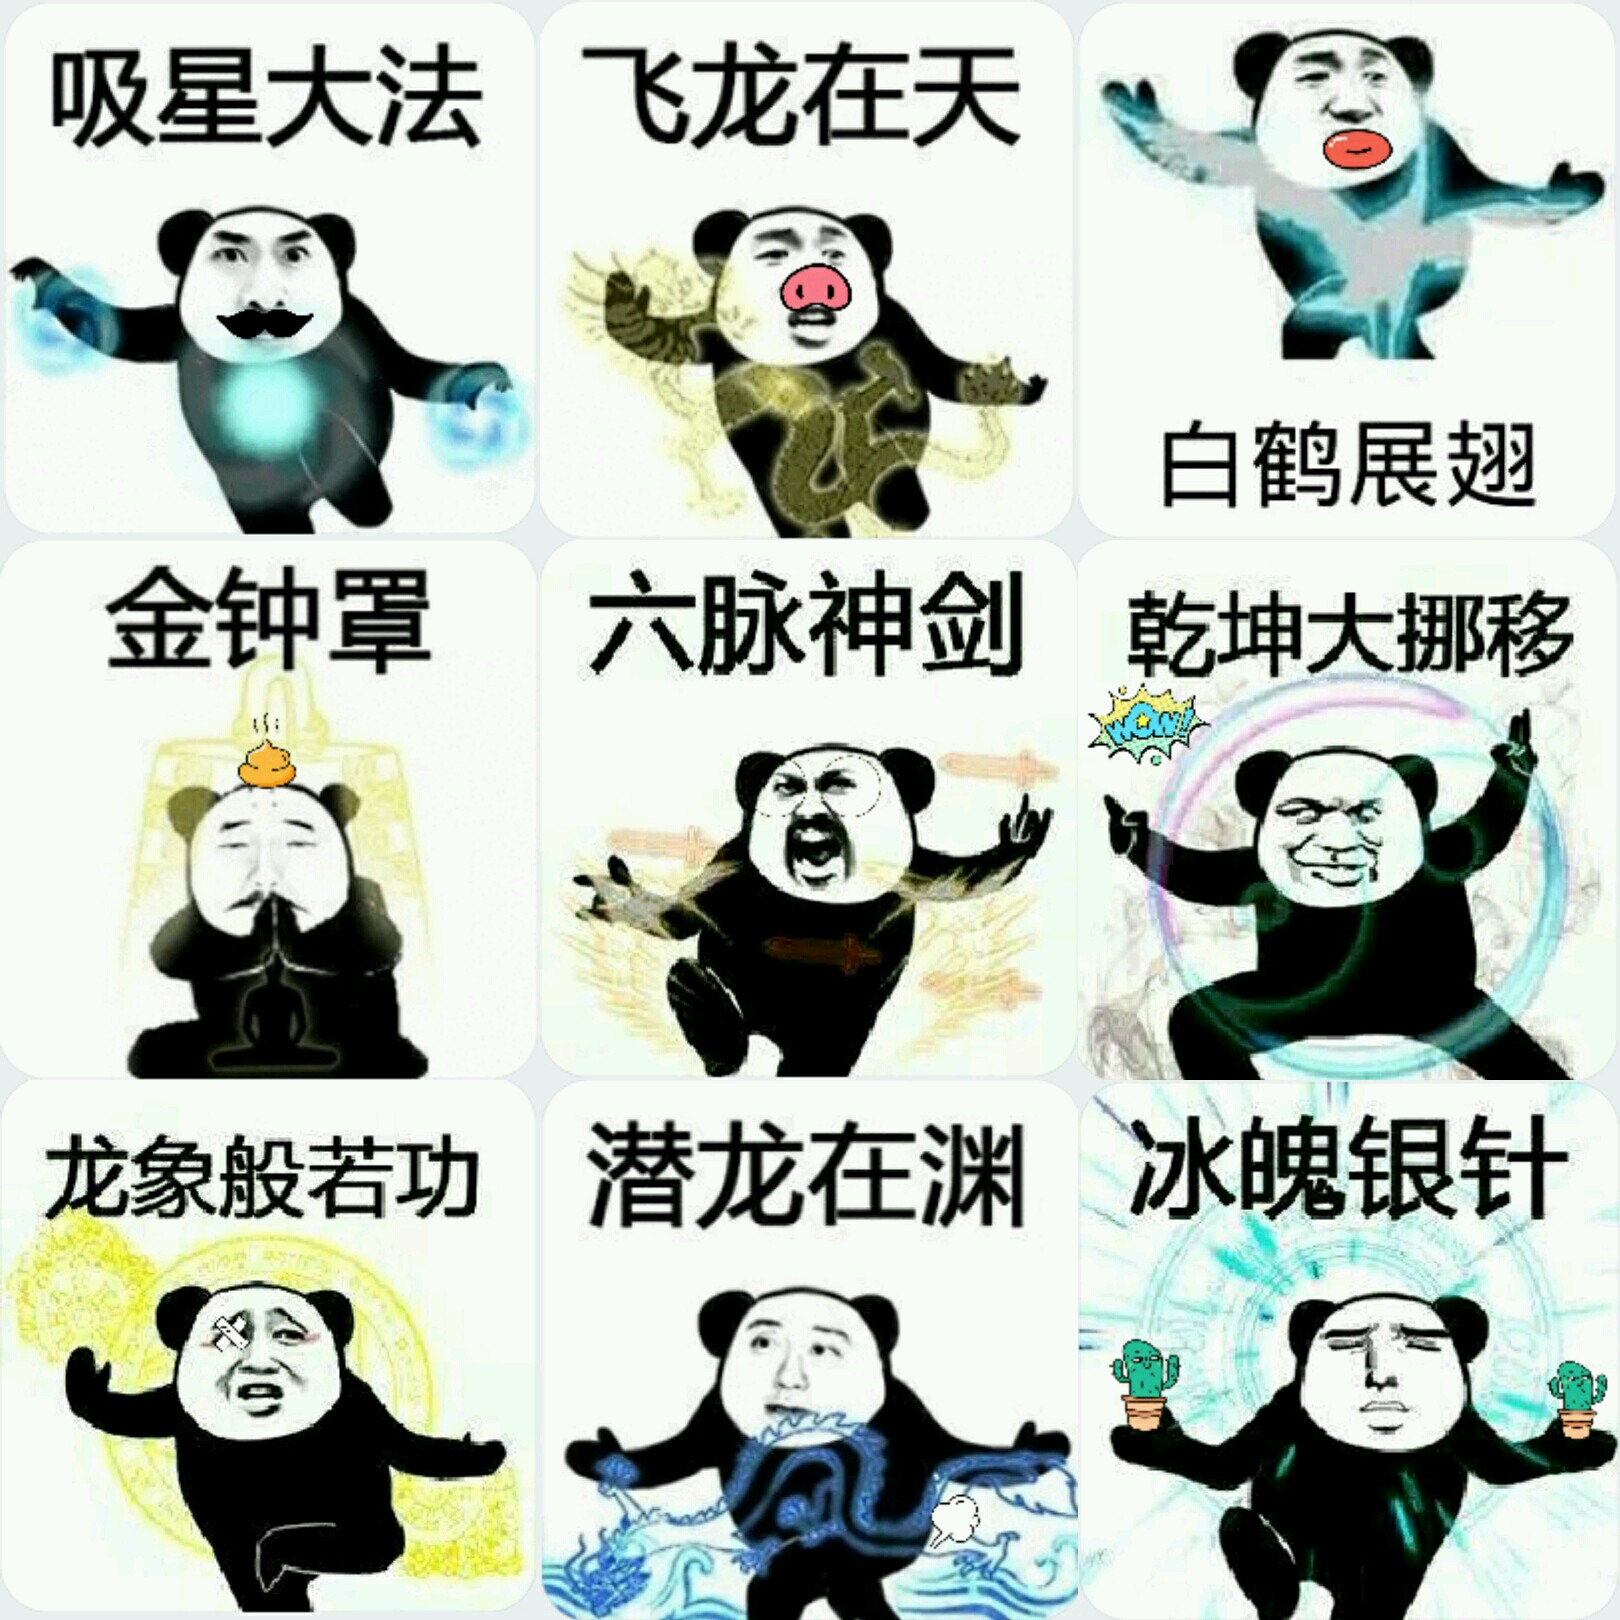 【实习】【表情包】功夫熊猫